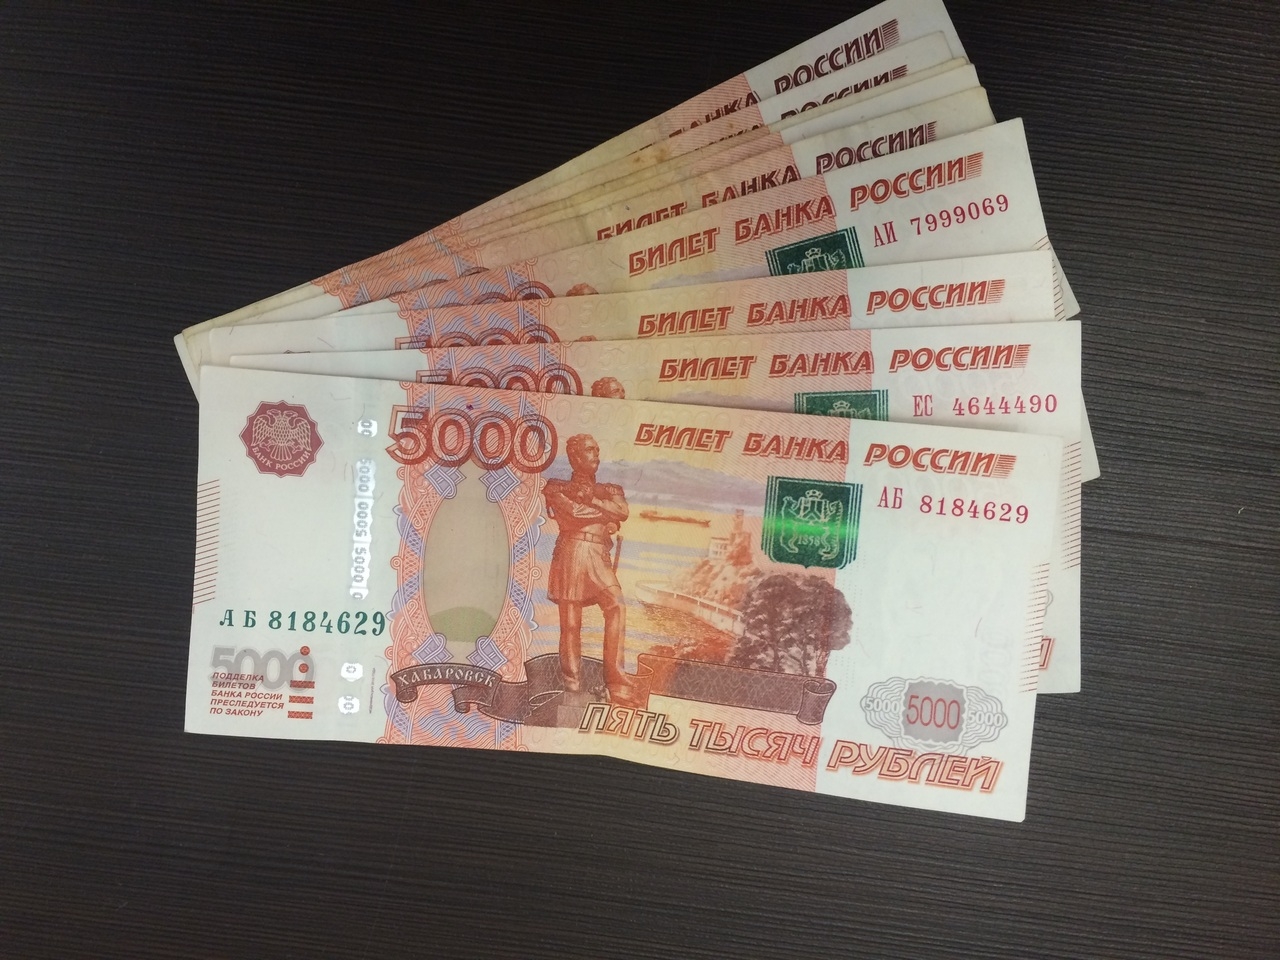 Пенсионерка из Астрахани отдала целительнице 115 тыс. рублей